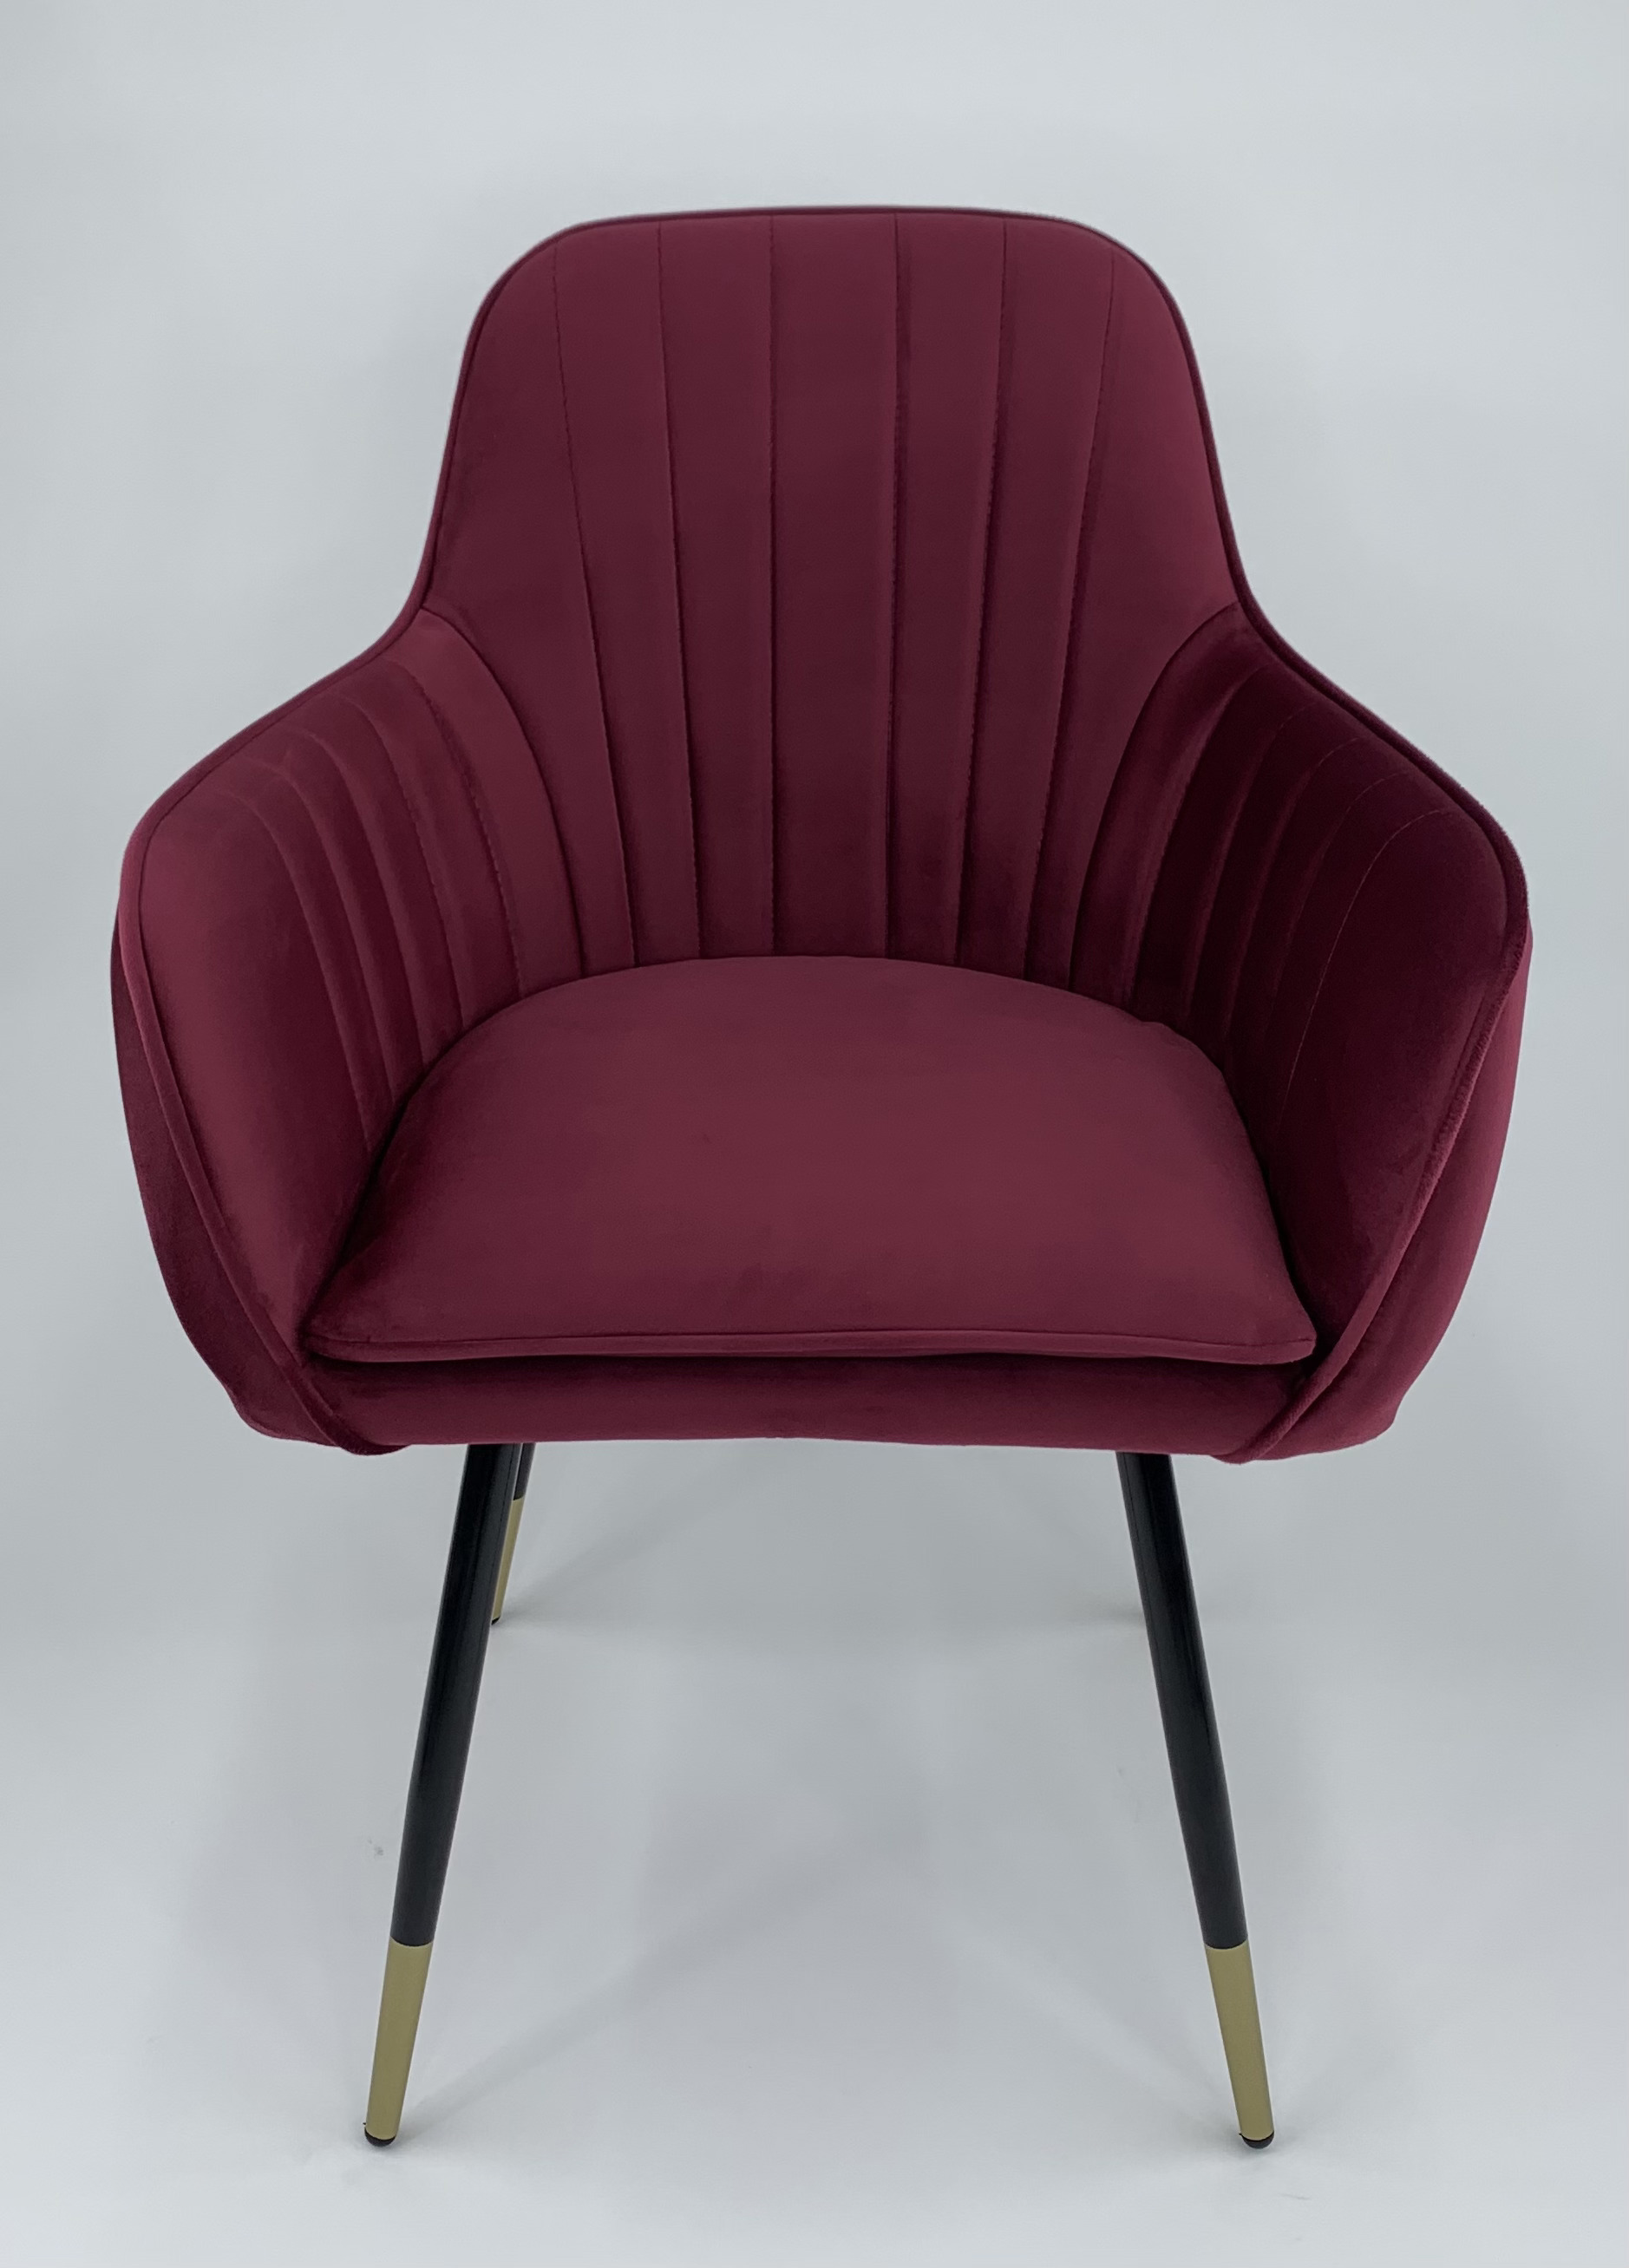 90203168 Стул-кресло для кухни/гостинной/спальни цвет брусничный Феникс STLM-0131115 MILAVIO